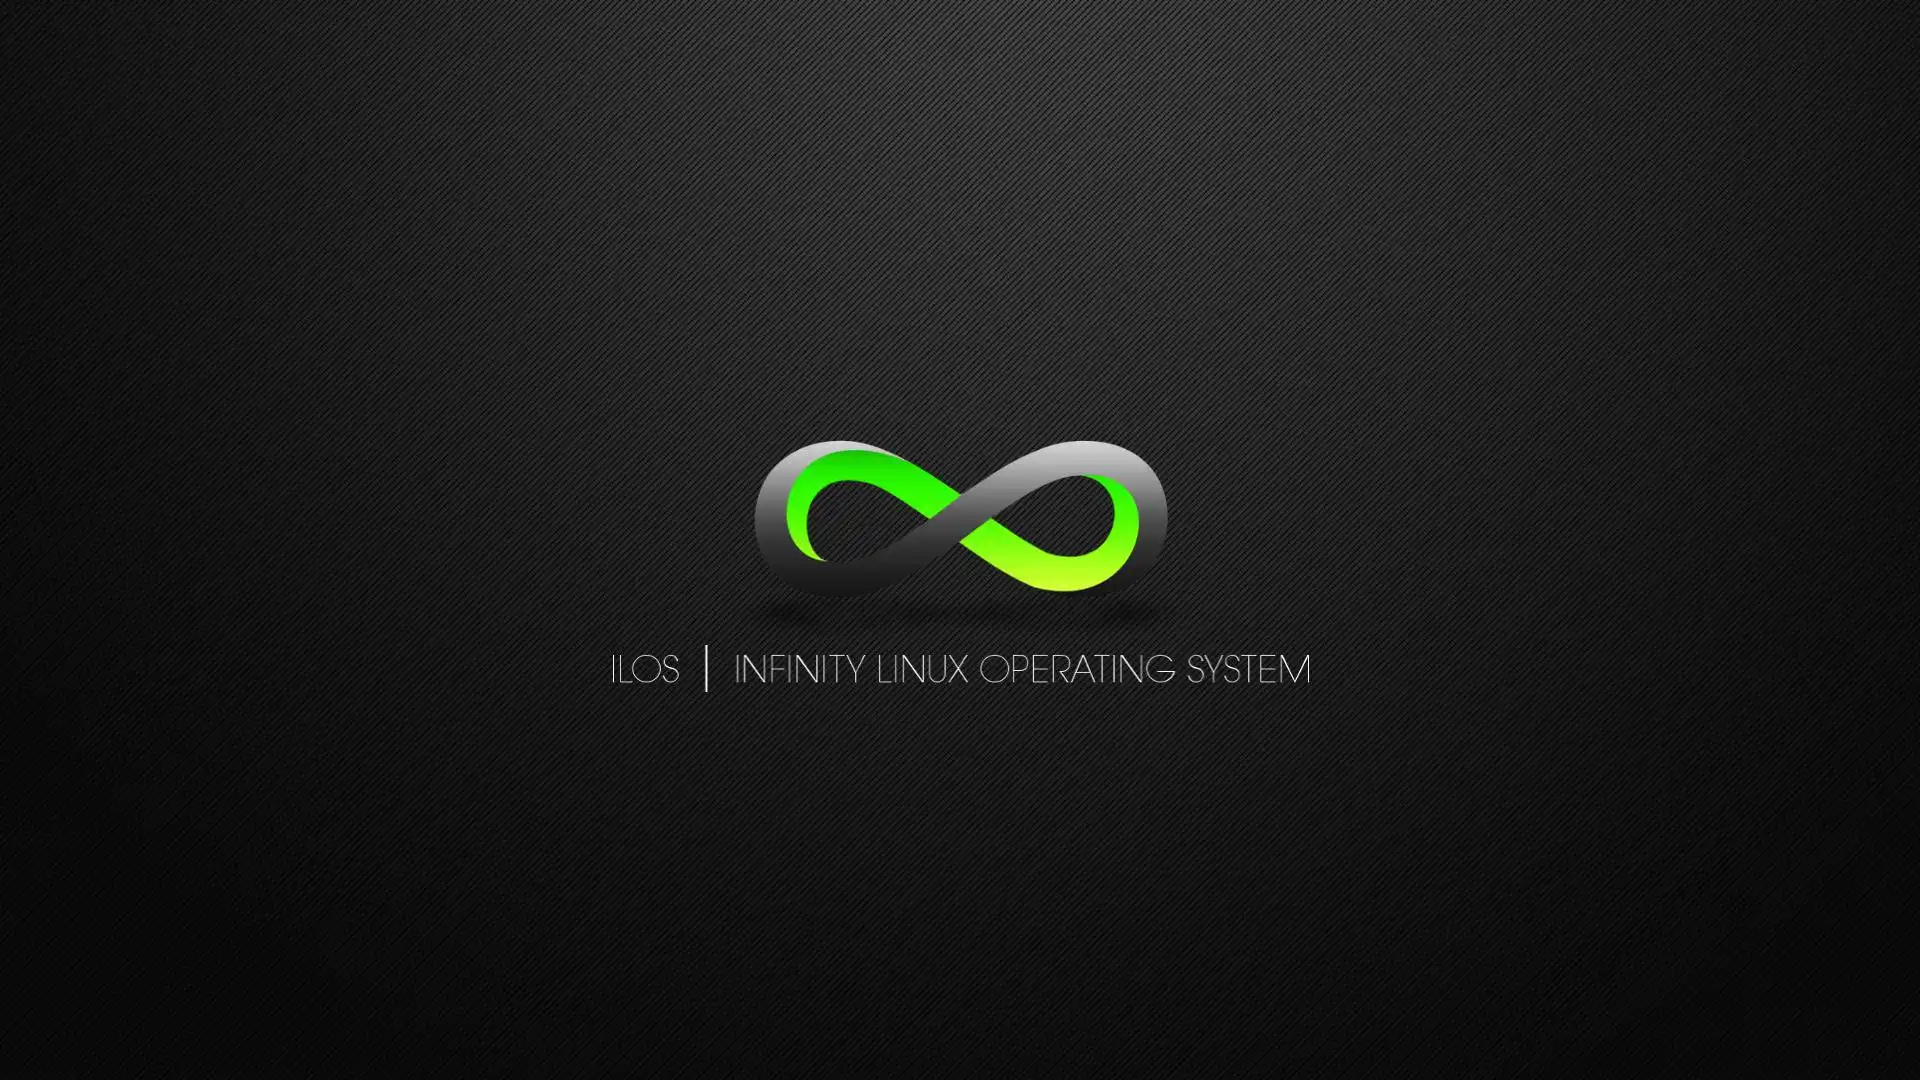 Baixe a ferramenta da web ou o aplicativo da web Infinity Linux OS